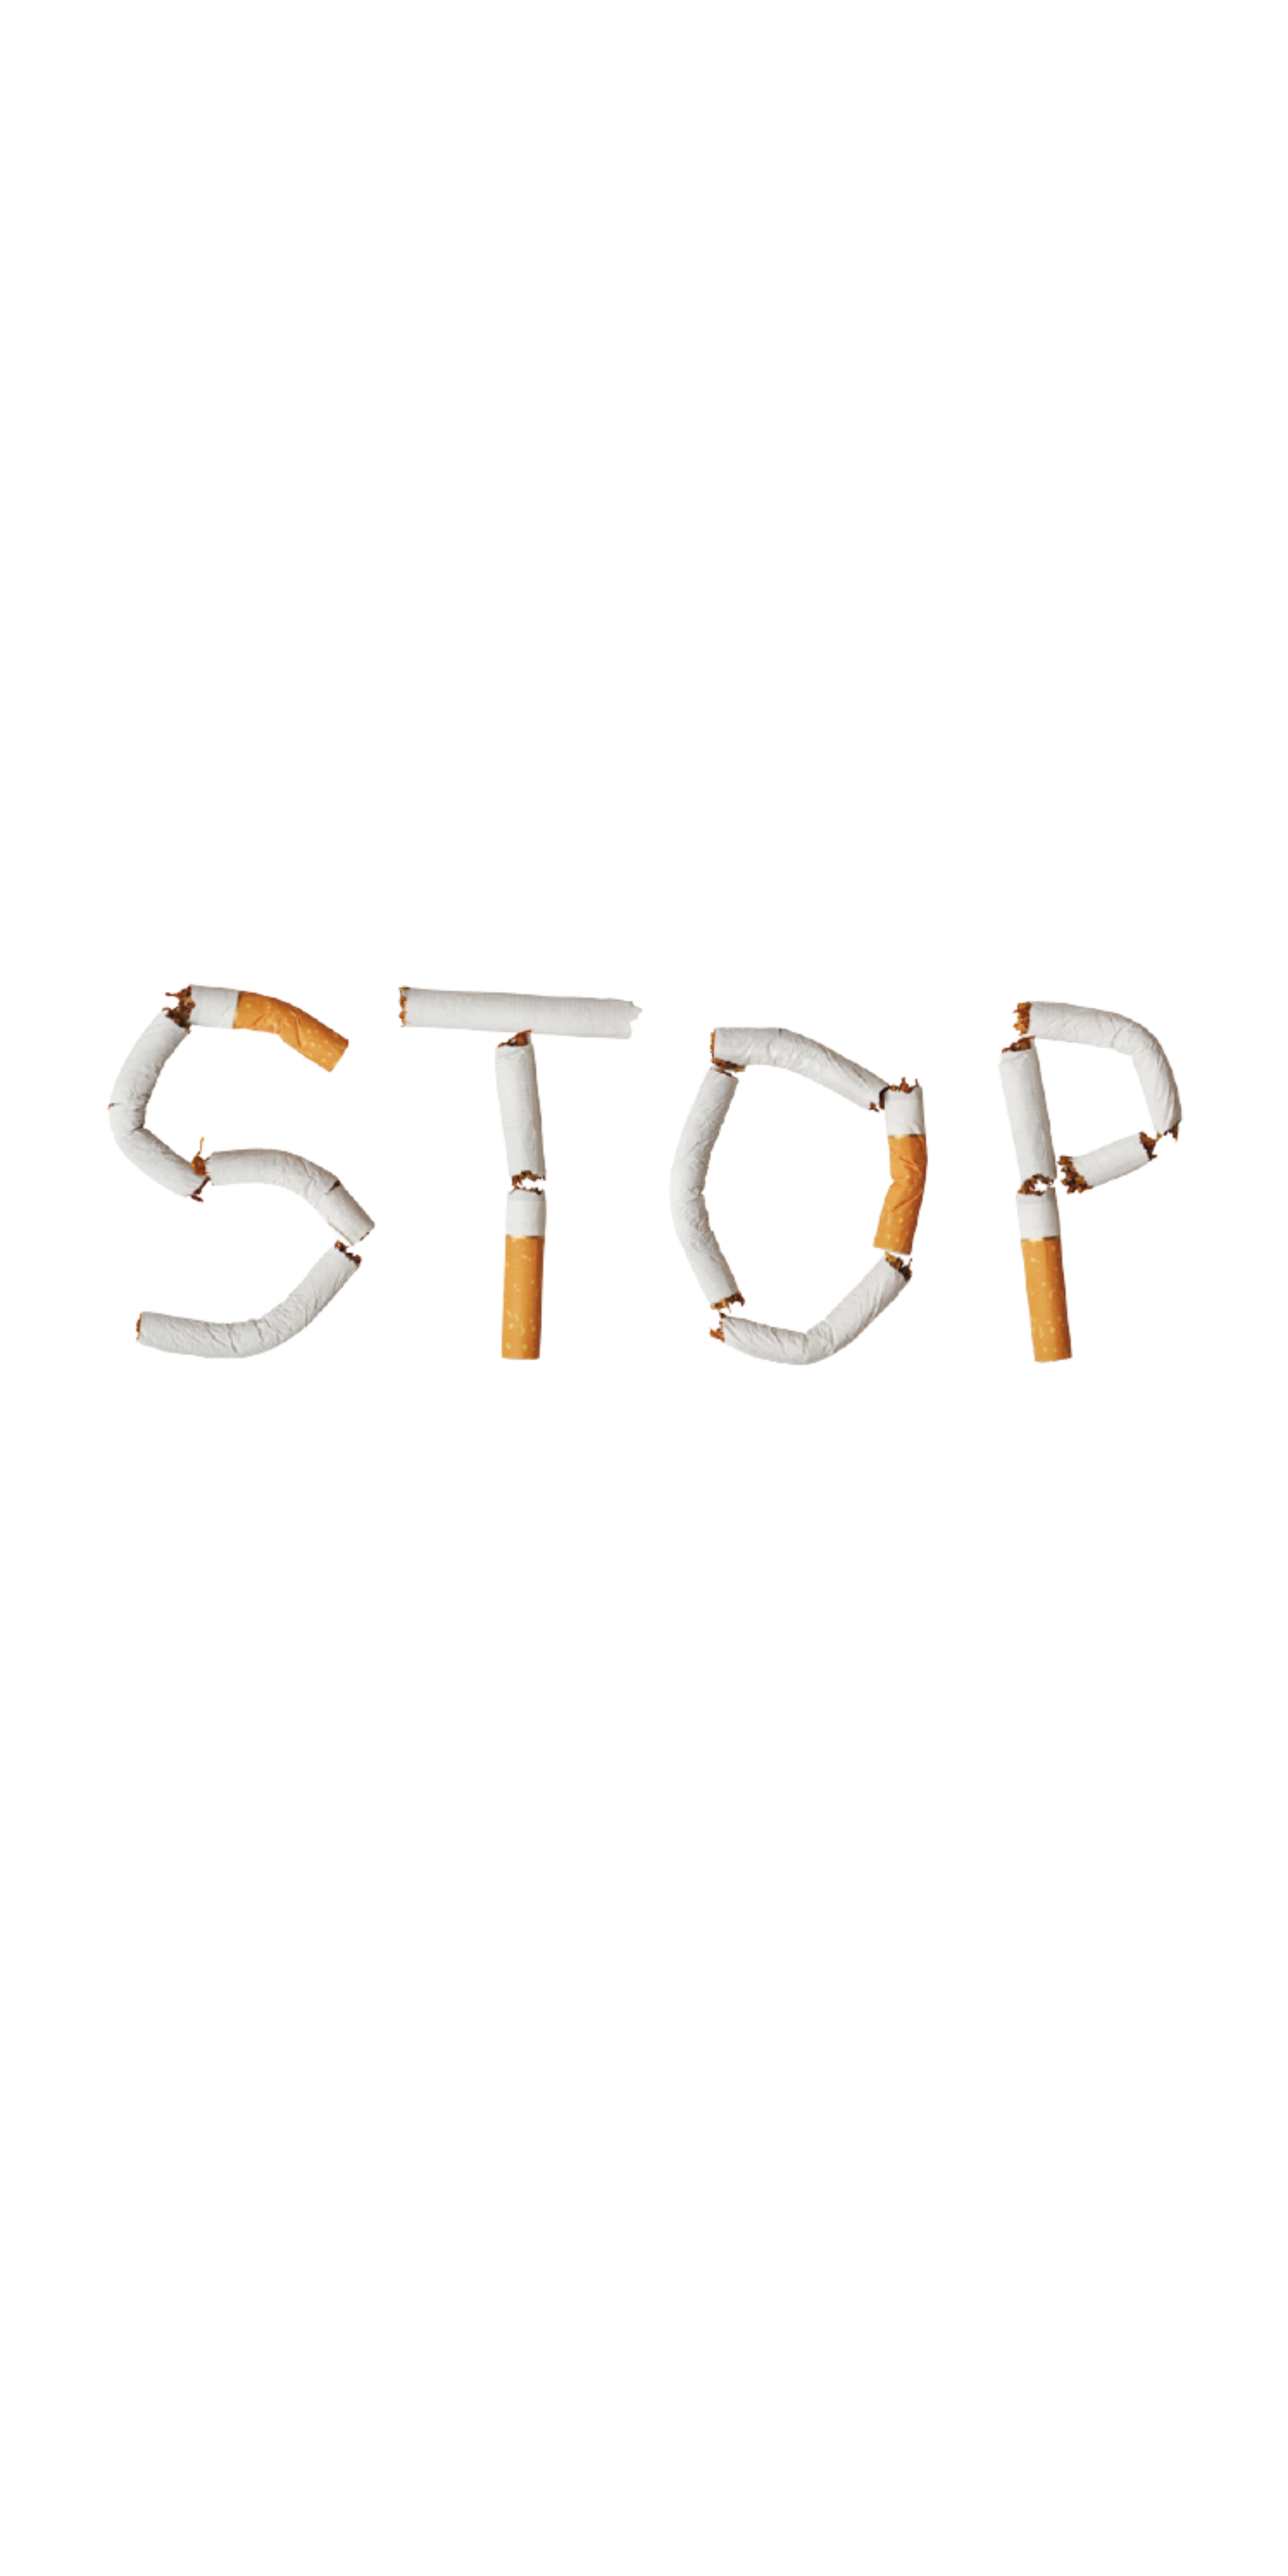 Mod'Vap vous conseil dans votre sevrage tabagique Modvap